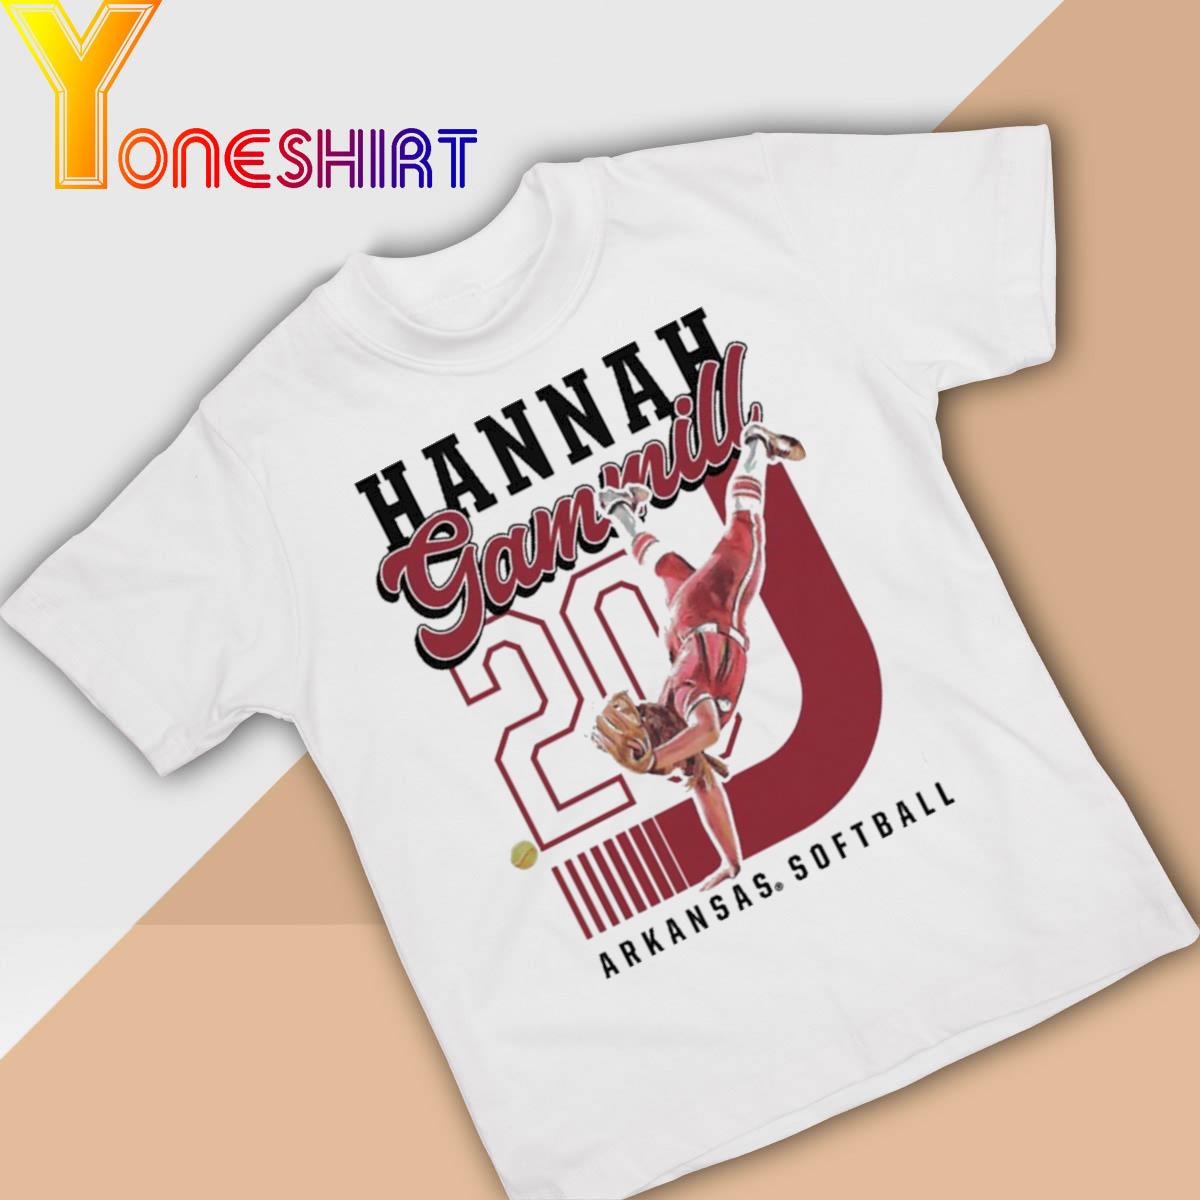 Official Hannah Gammill Handstand shirt